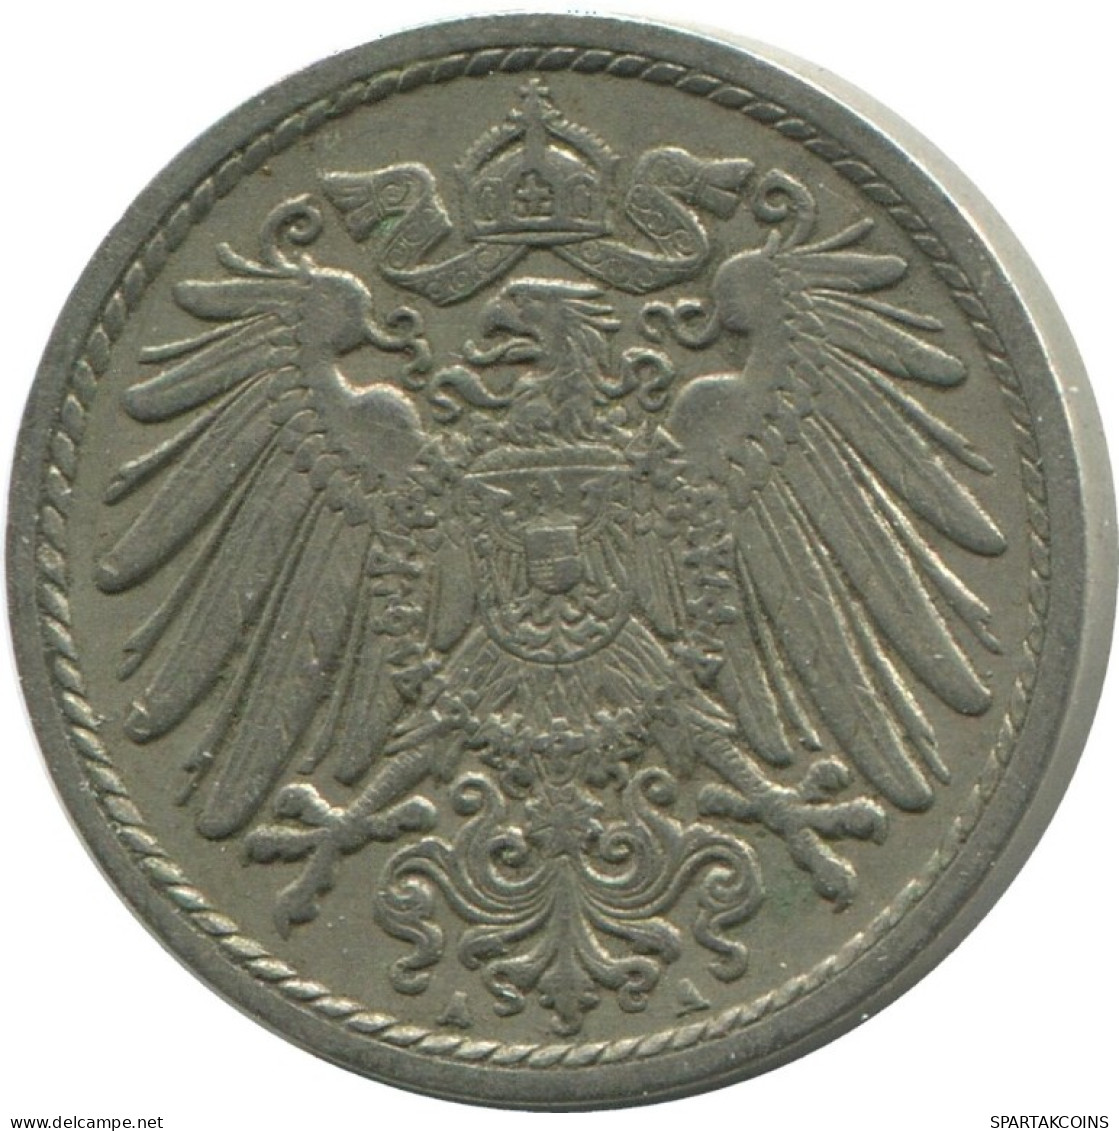 5 PFENNIG 1901 A GERMANY Coin #AD531.9.U.A - 5 Pfennig